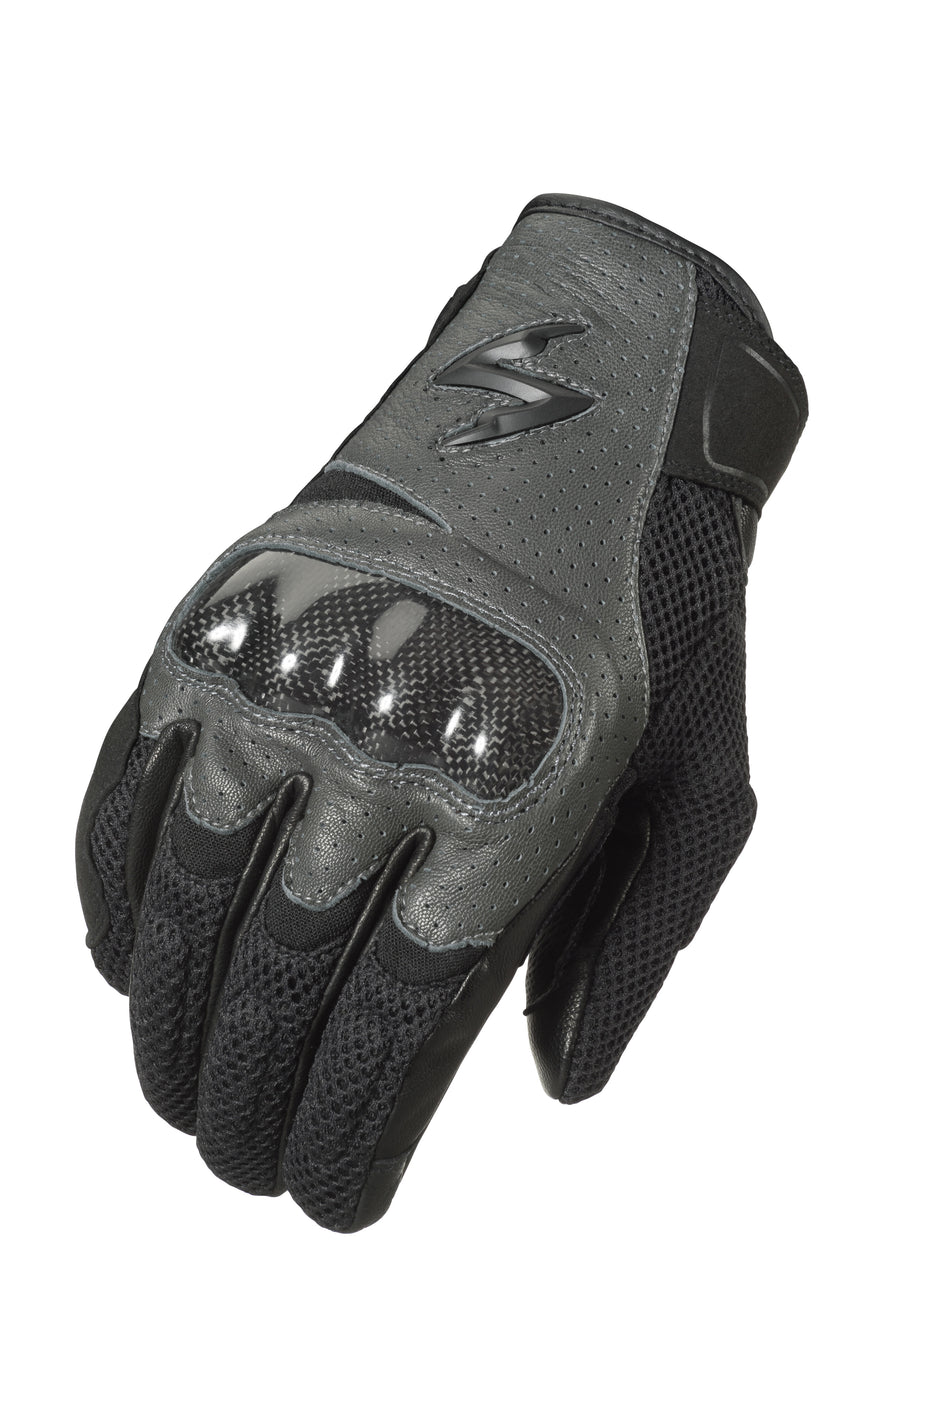 SCORPION EXO Vortex Air Gloves Grey Xl G36-066